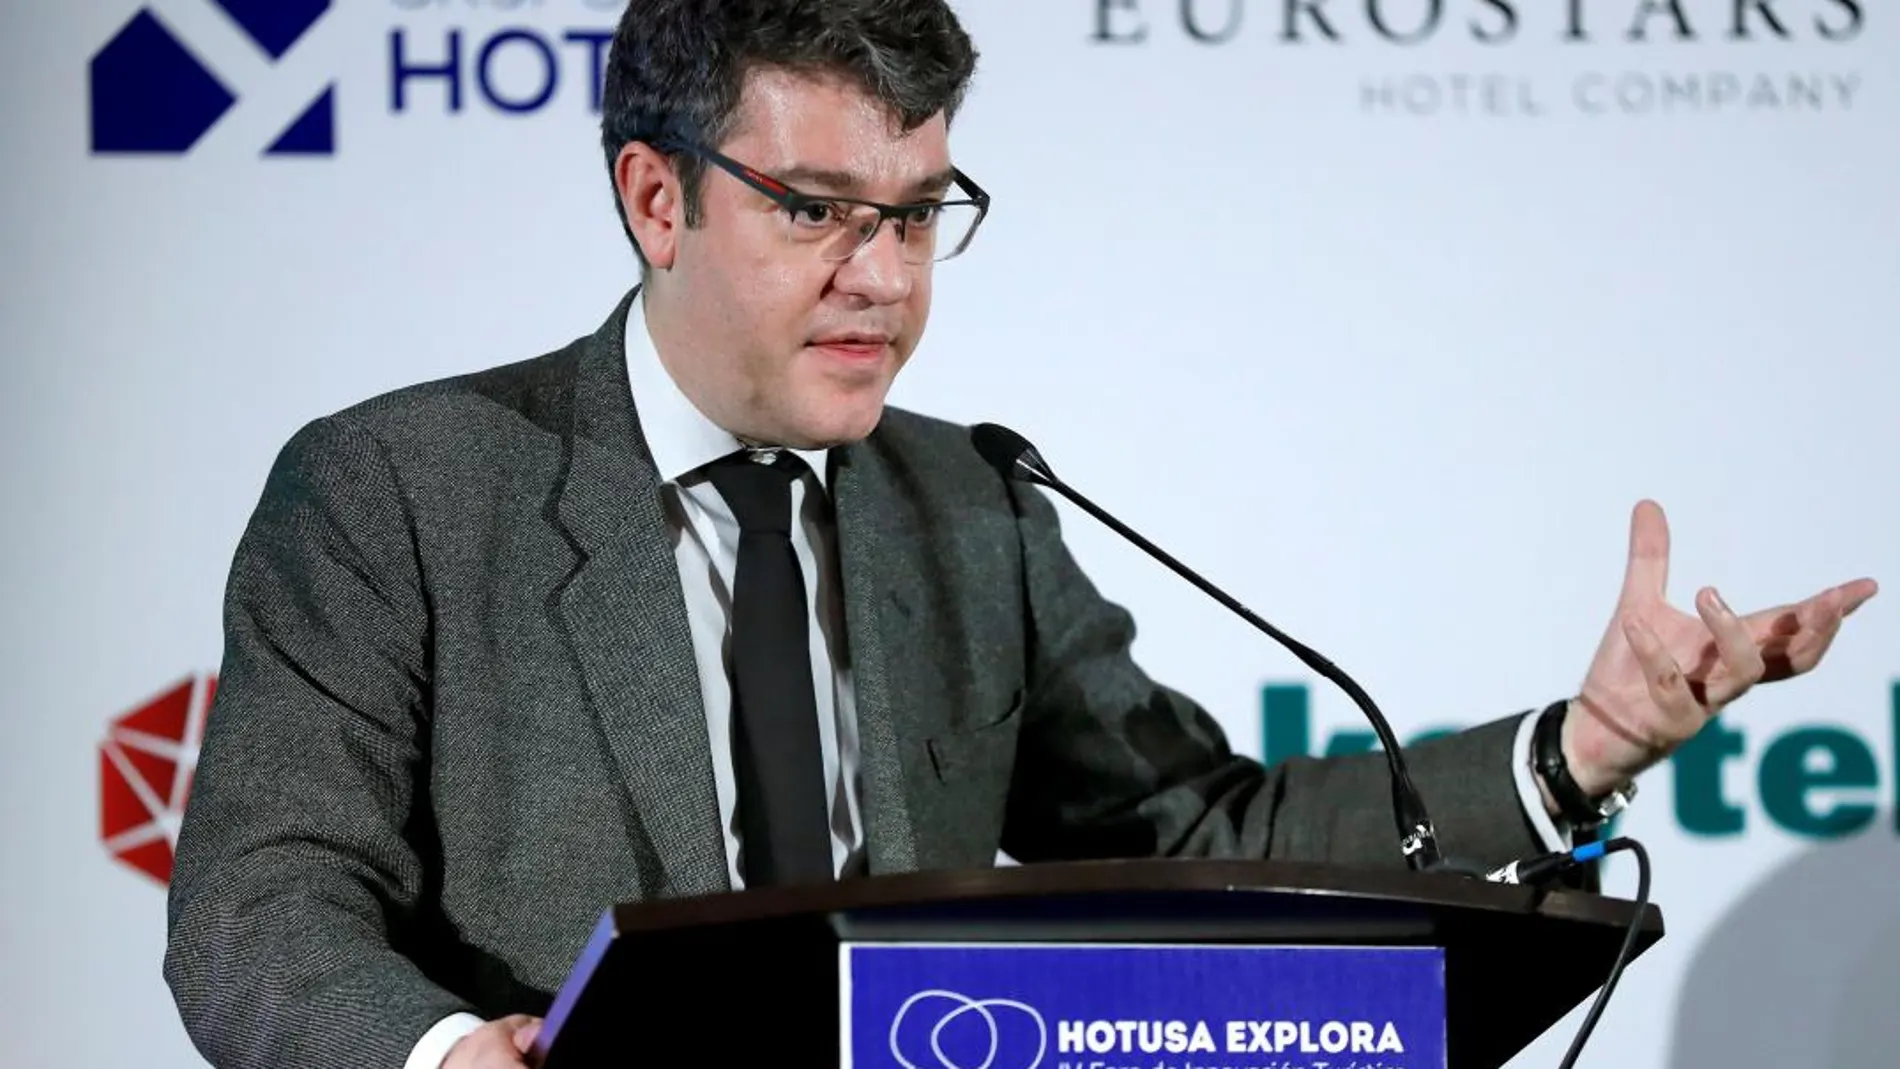 El ministro de Energía Álvaro Nadal, durante su intervención en la clausura del Foro de Innovación Turística "Hotusa explora"